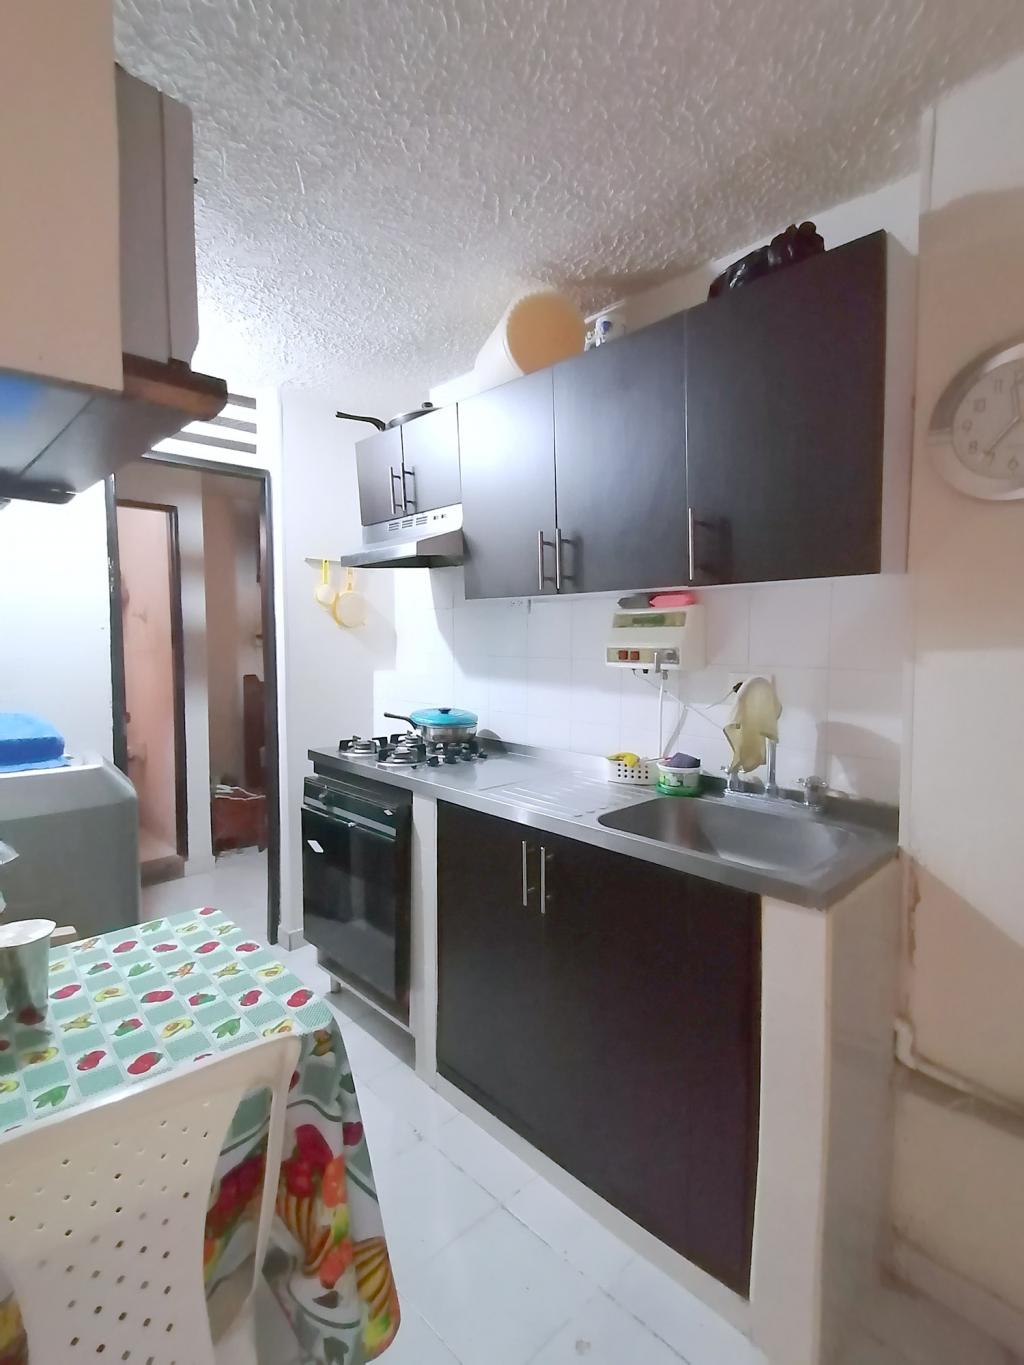 Apartamento en Venta por Issa Saieh Inmobiliaria ubicado en Barranquilla. El código del inmueble es: 7255470 Imágen 4